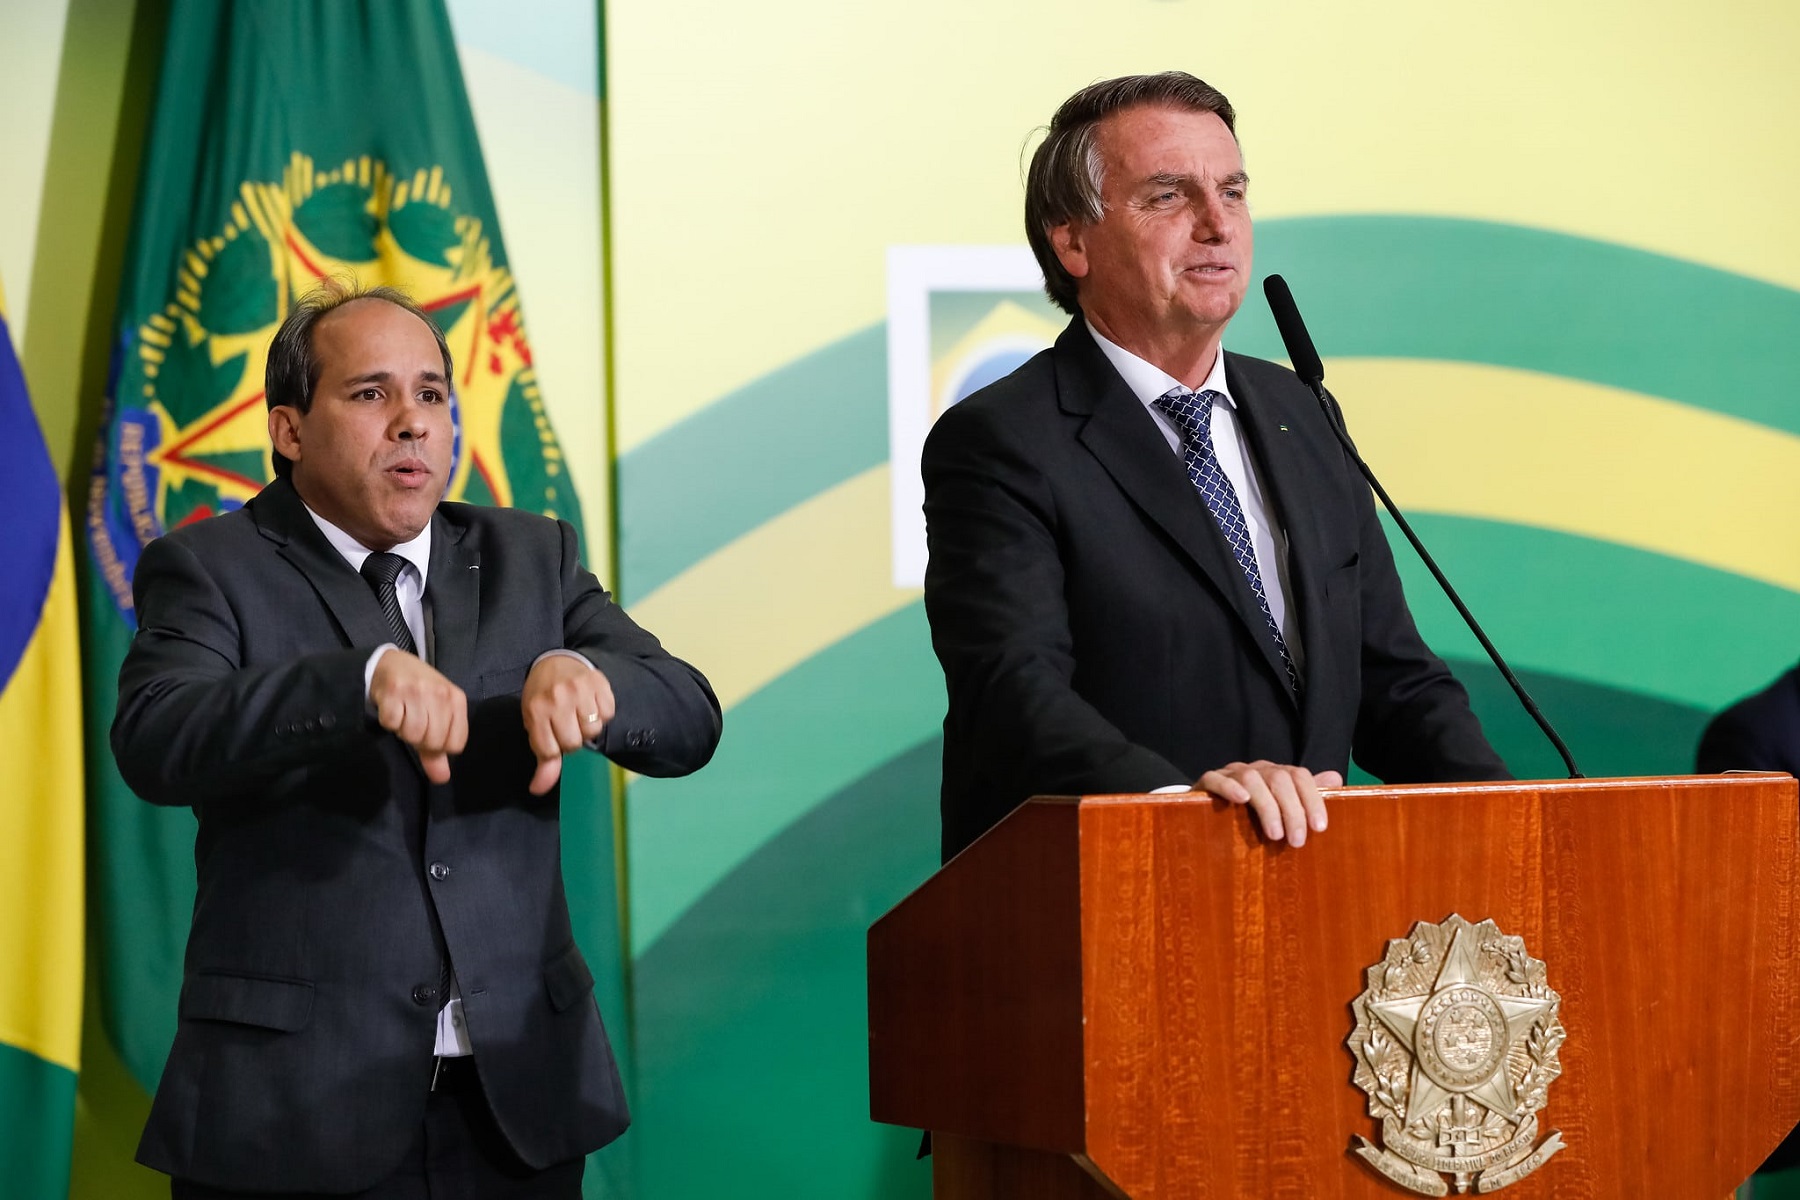 Polícia Federal diz que houve crime em vazamento de dados, mas não indicia Bolsonaro